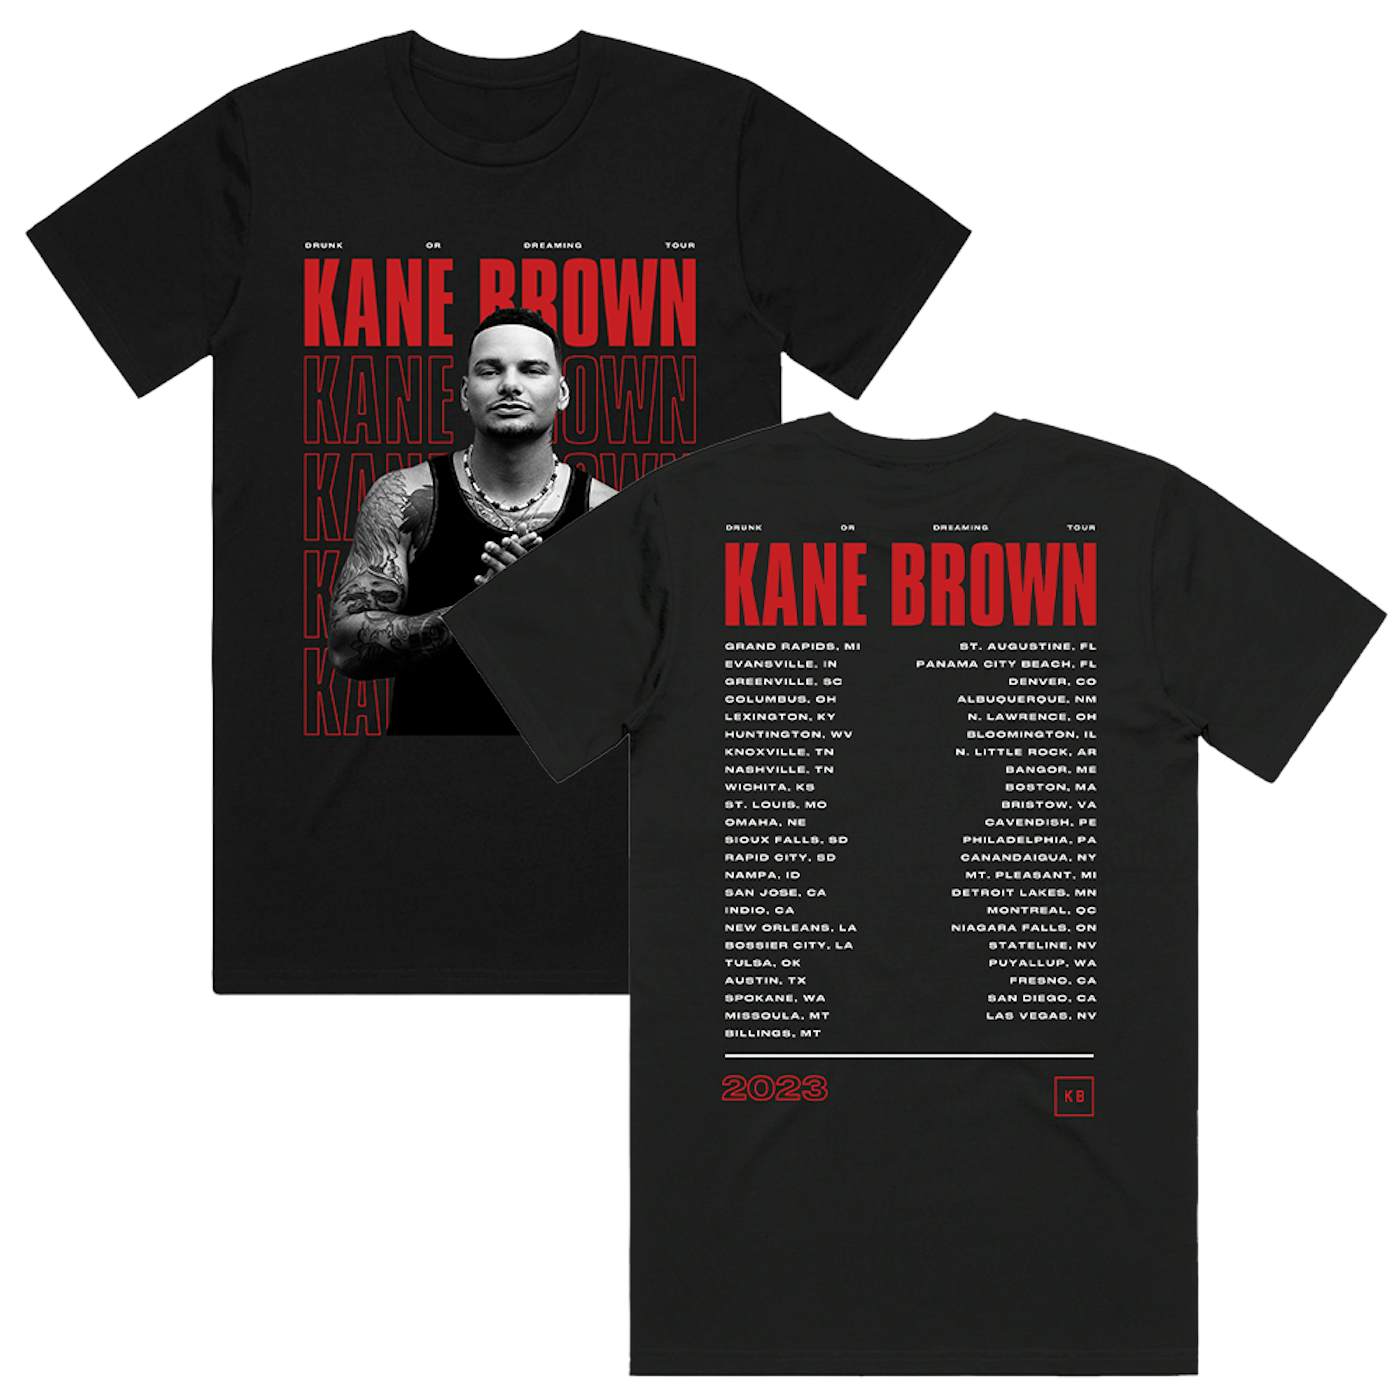 Kane Brown Drunk Or Dreaming Tour Tee